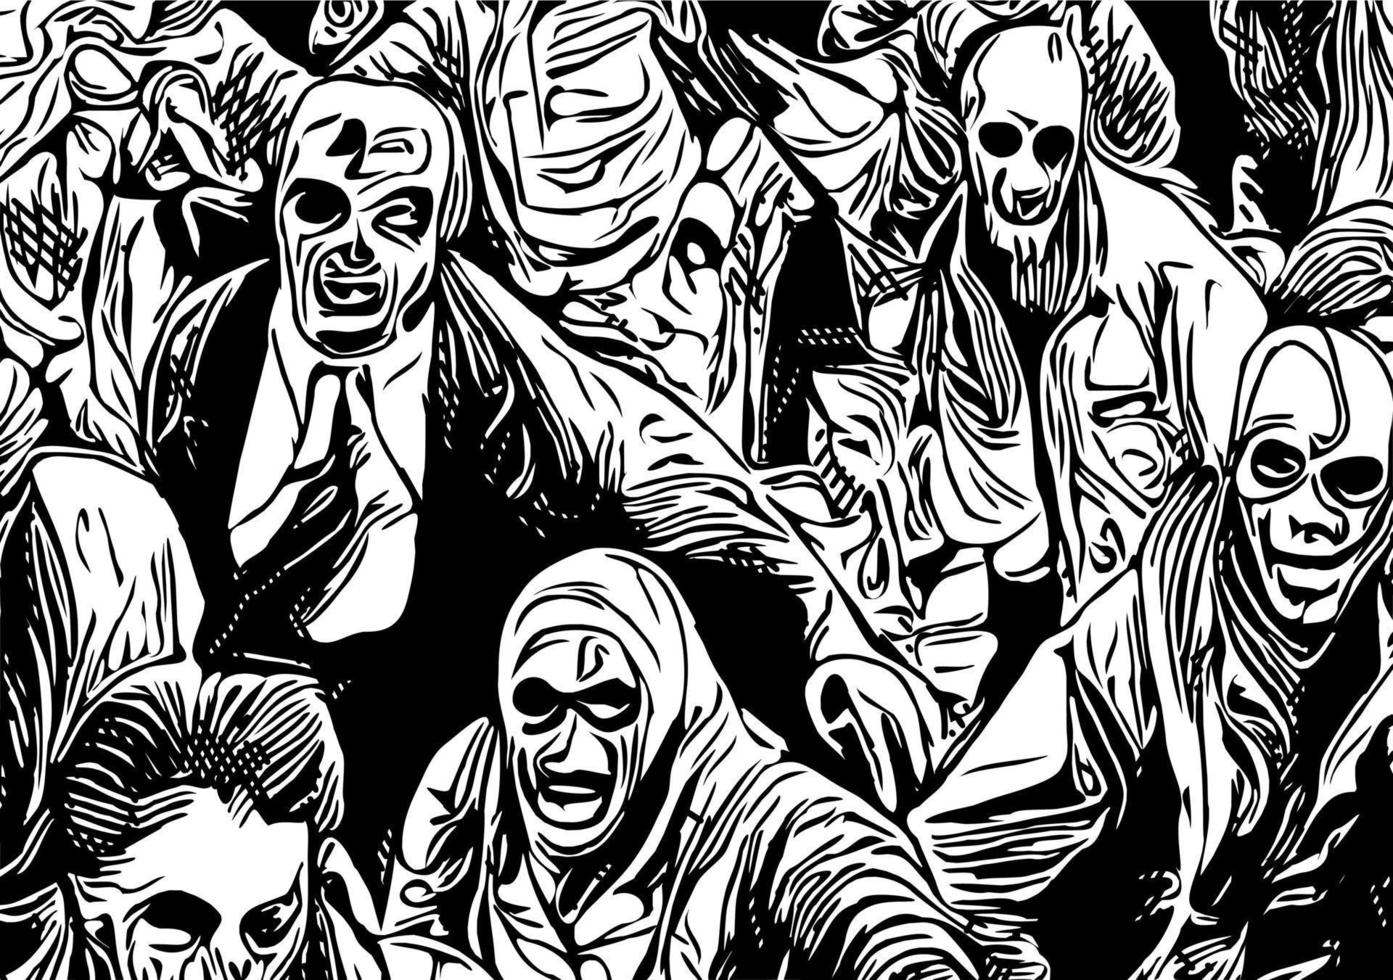 illustration vectorielle de monstre zombie vecteur